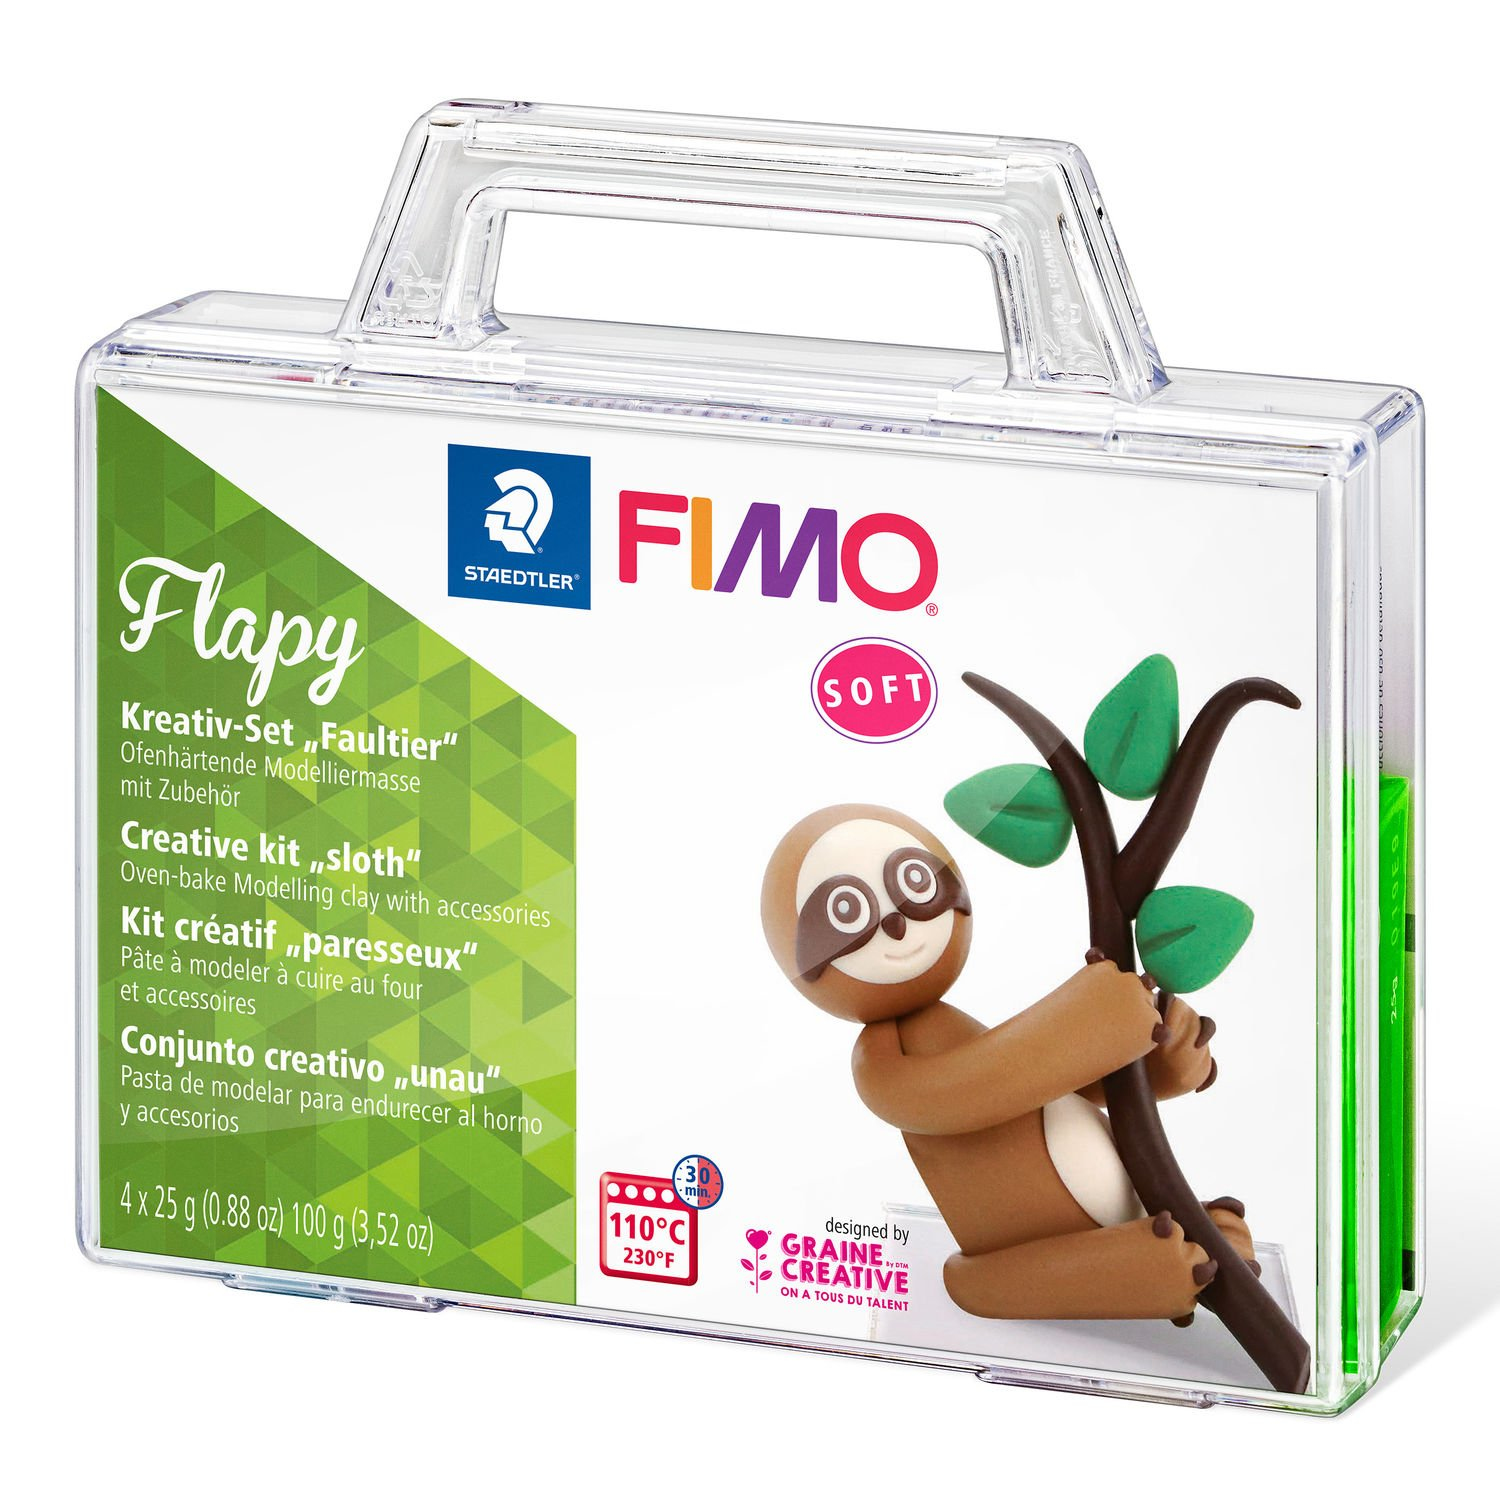 STAEDTLER FIMO Flapy - Knetmasse - Beige - Braun - Schokolade - Grün - Erwachsene - 4 Stück(e) - 4 Farben - 110 °C